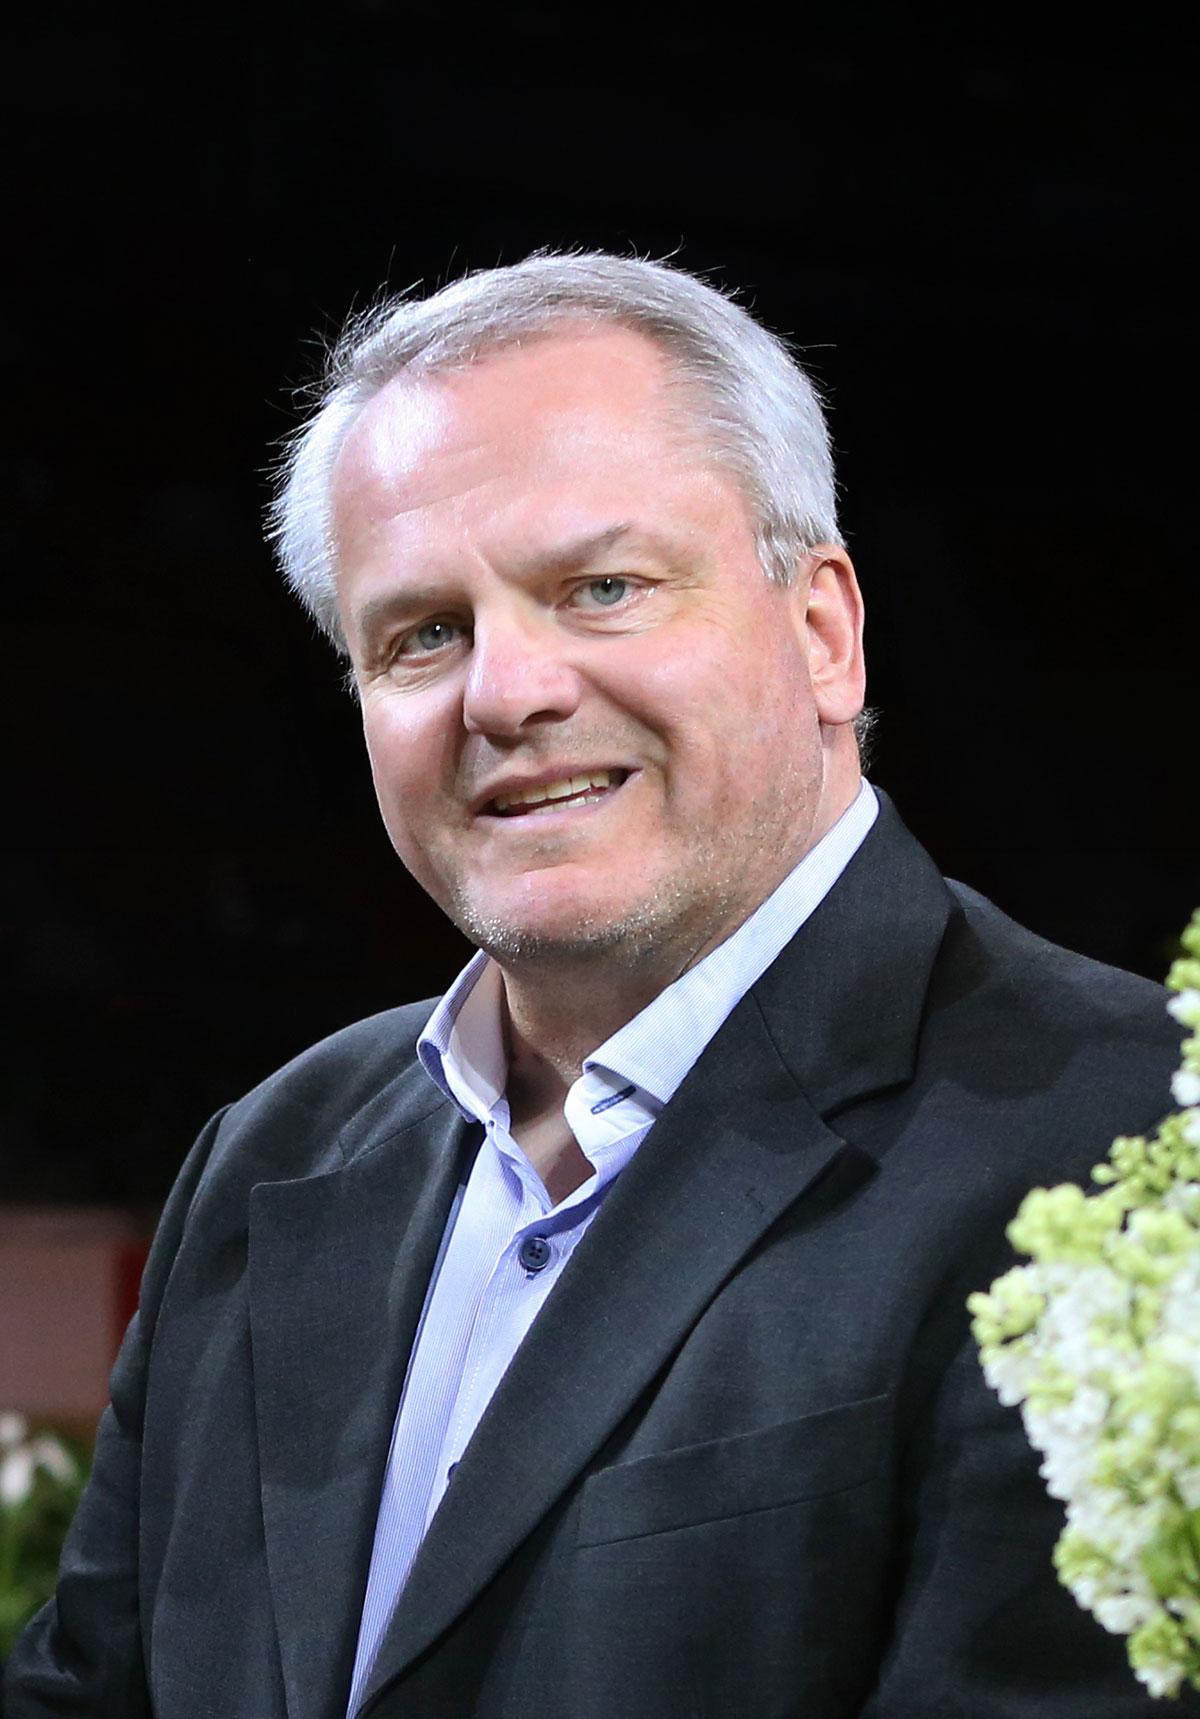 Roger Blomquist på plats på världscupfinalerna i hästhoppning i Göteborg 2013.
Foto: Roland Thunholm/SVT